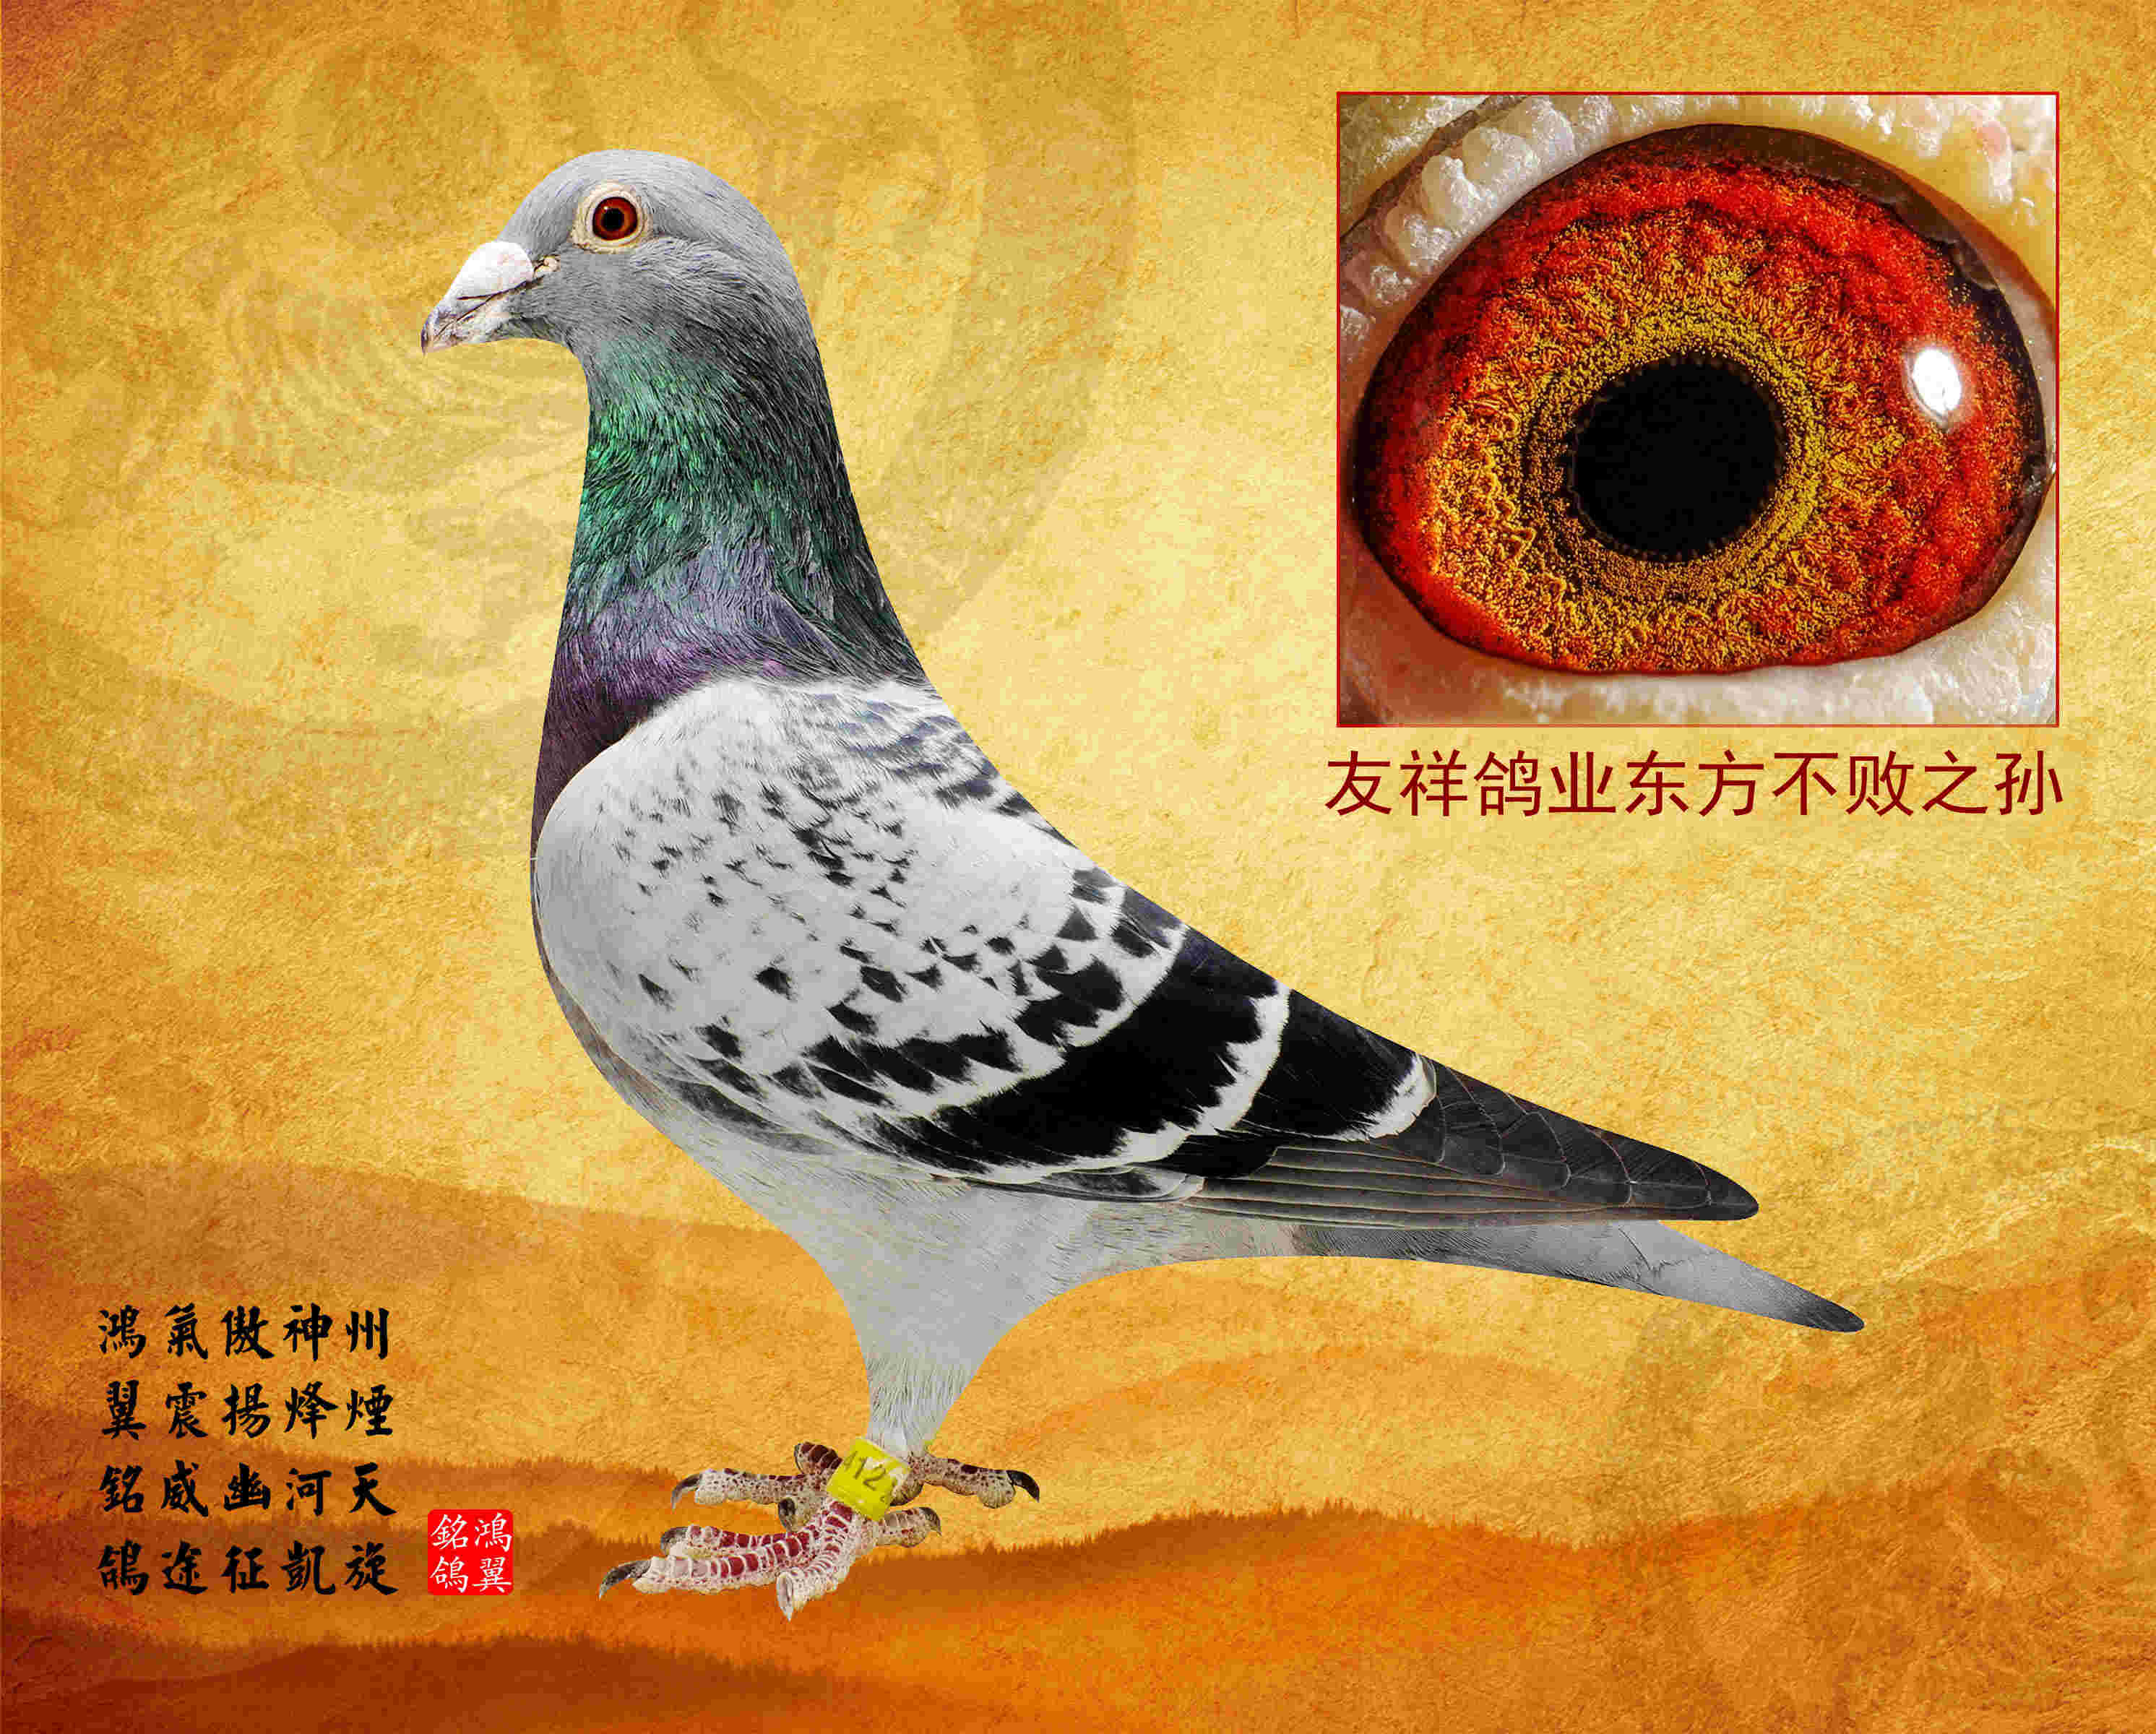 上海王成的鸽子图片